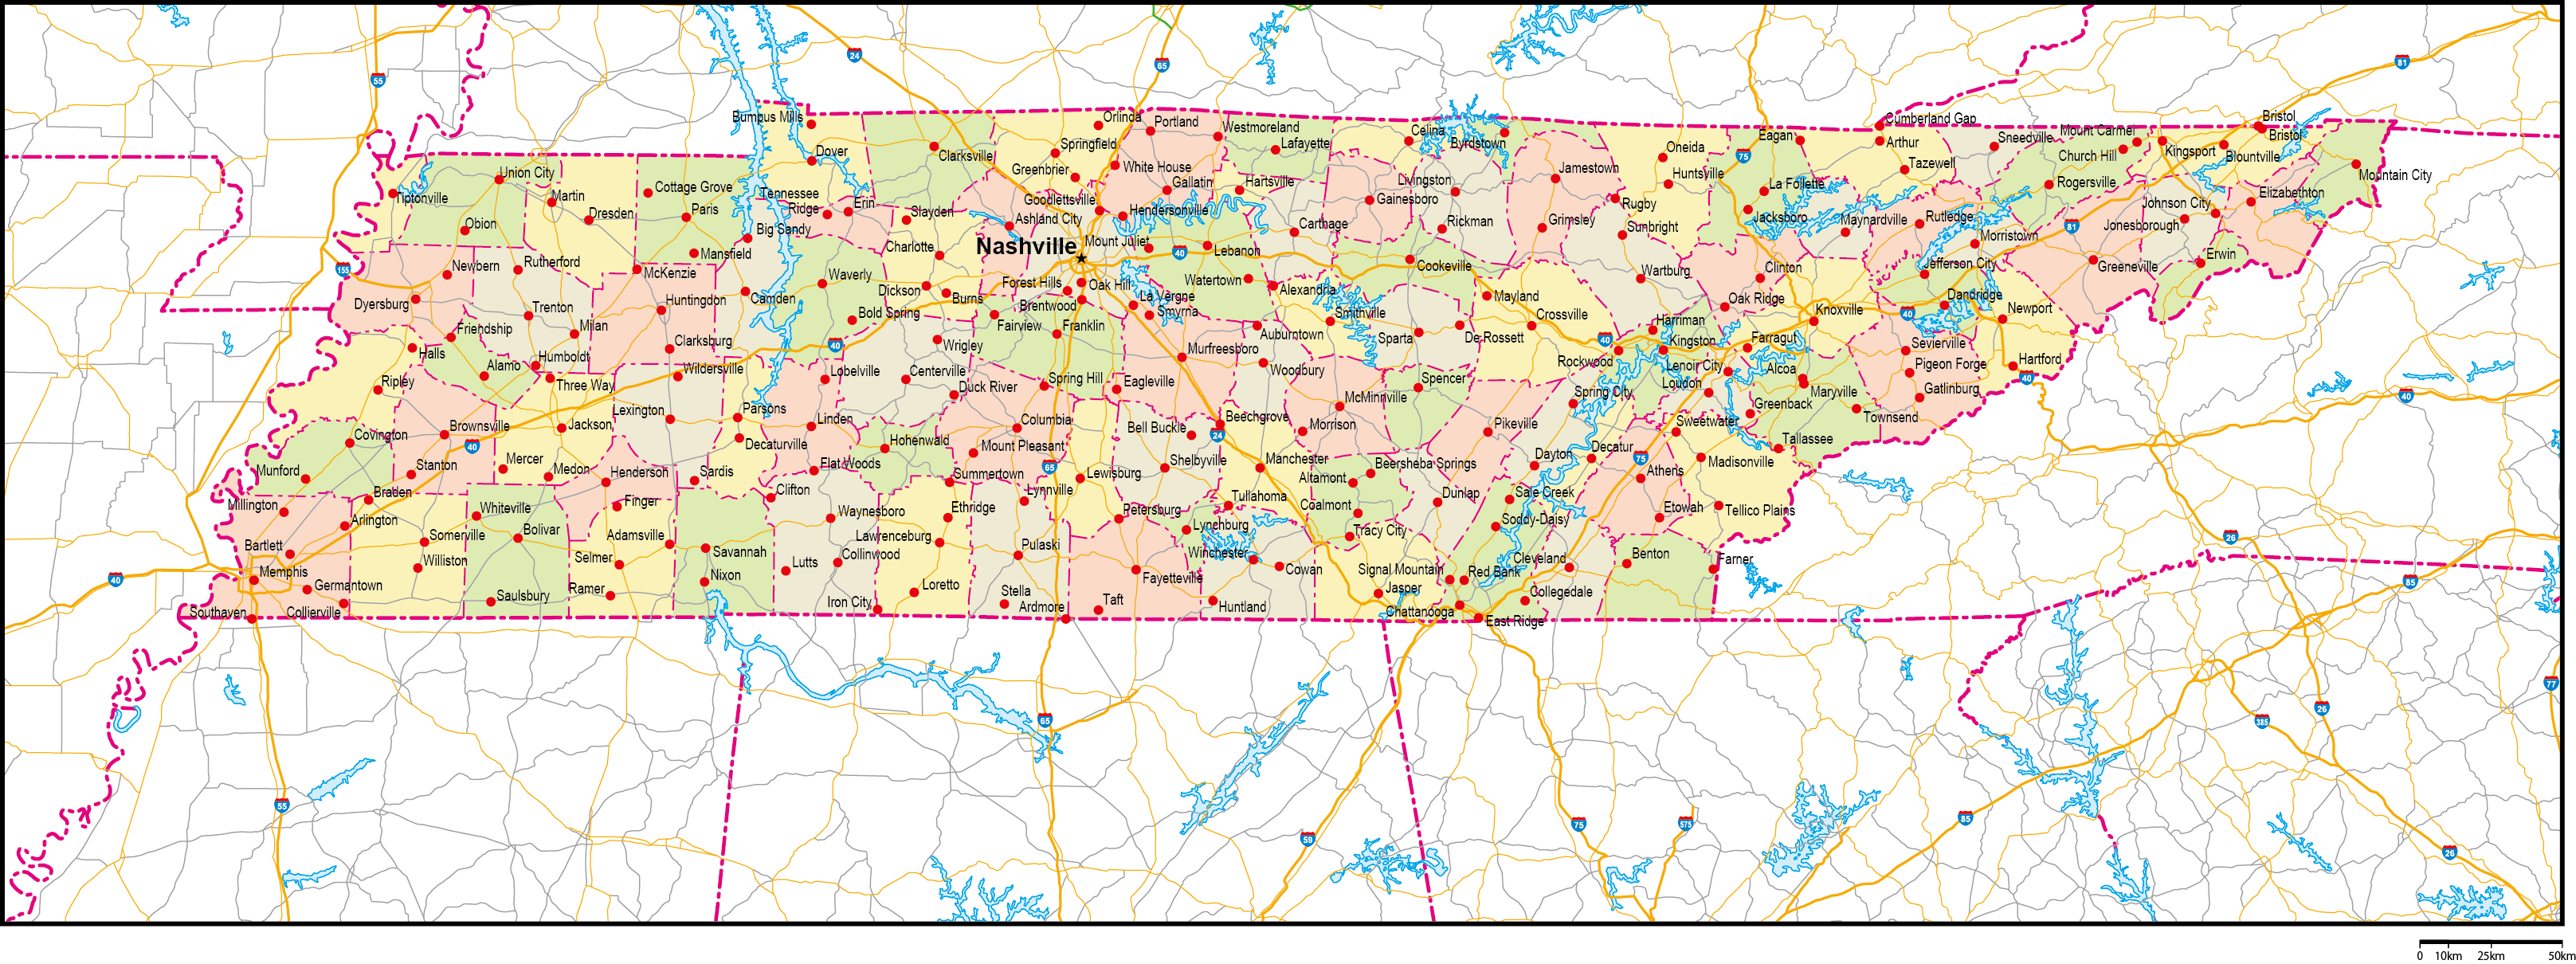 テネシー州郡色分け地図州都・主な都市・道路あり(英語)フリーデータの画像